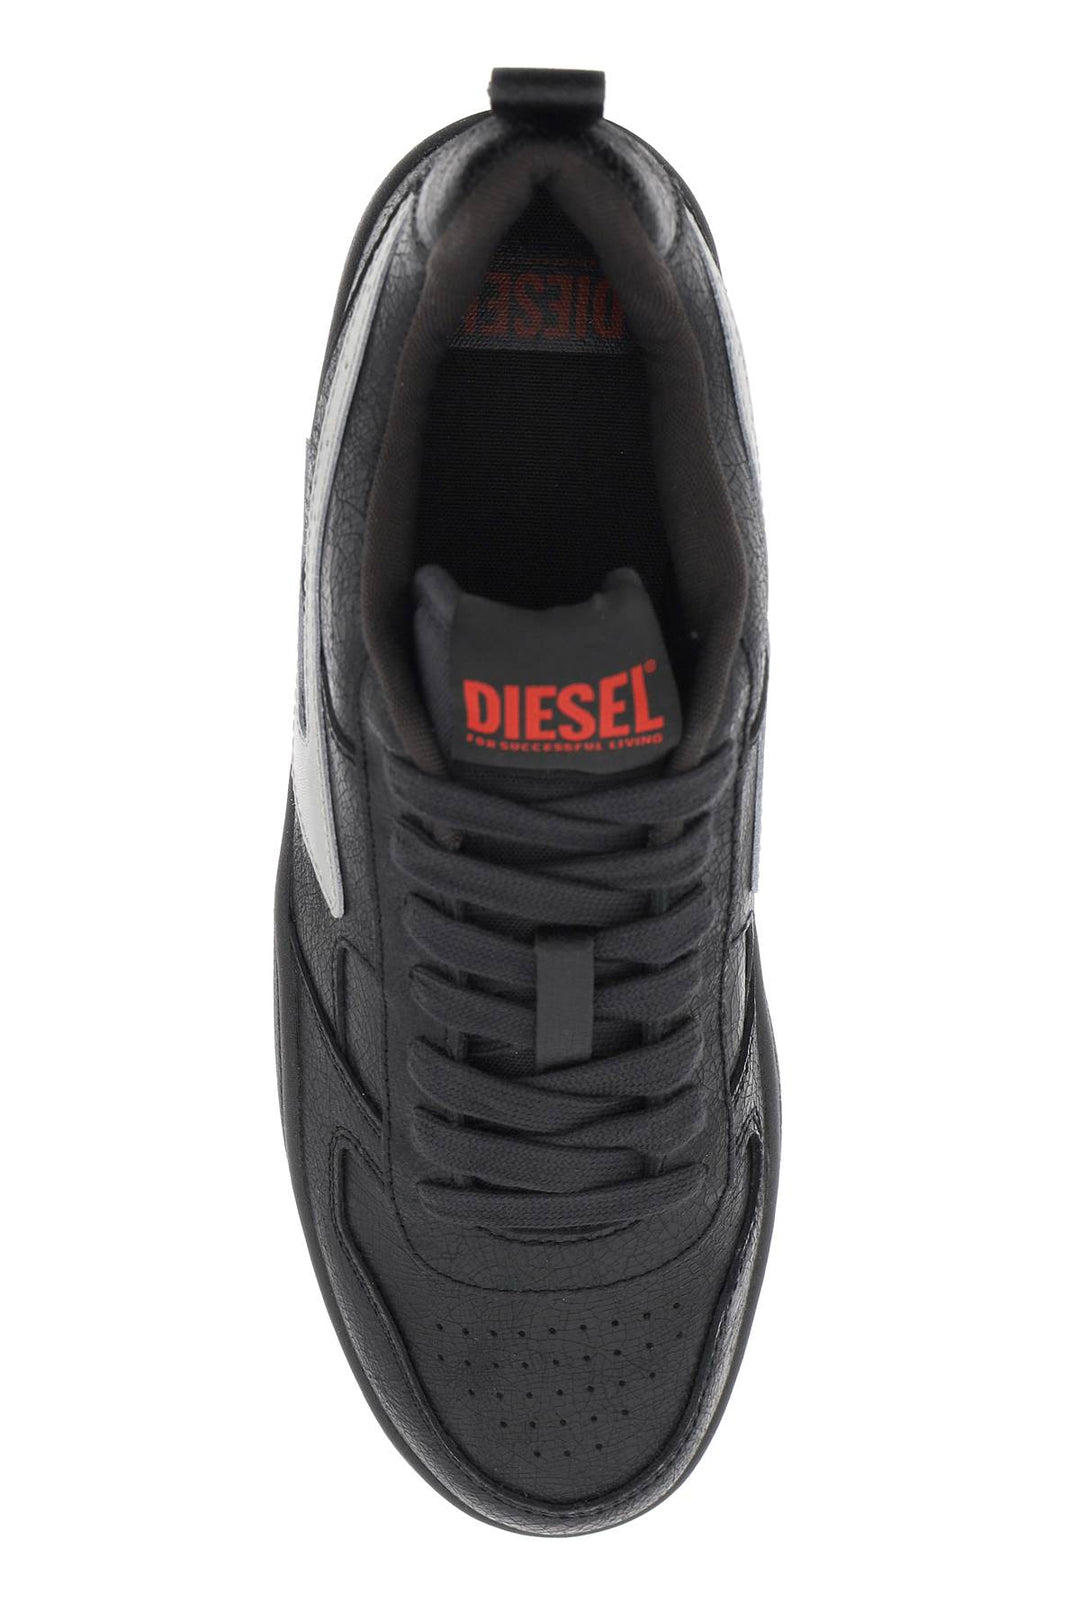 Diesel Low 'Ukiyo V2' Sneakers   Argento